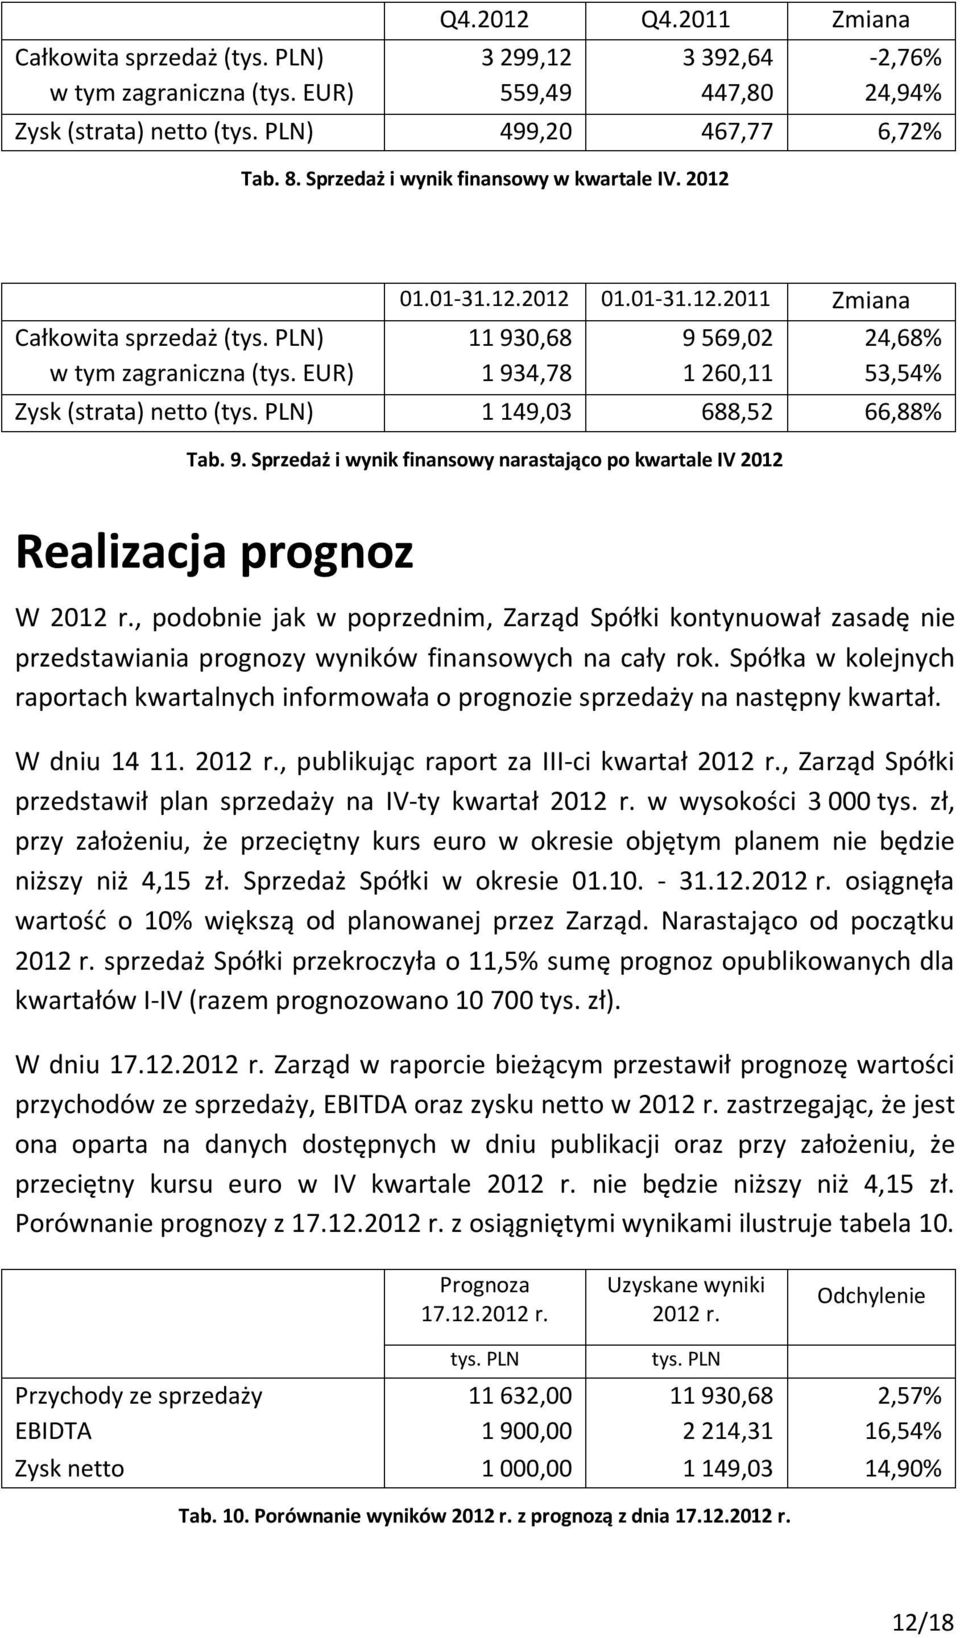 EUR) 1 934,78 1 260,11 53,54% Zysk (strata) netto (tys. PLN) 1 149,03 688,52 66,88% Tab. 9. Sprzedaż i wynik finansowy narastająco po kwartale IV 2012 Realizacja prognoz W 2012 r.